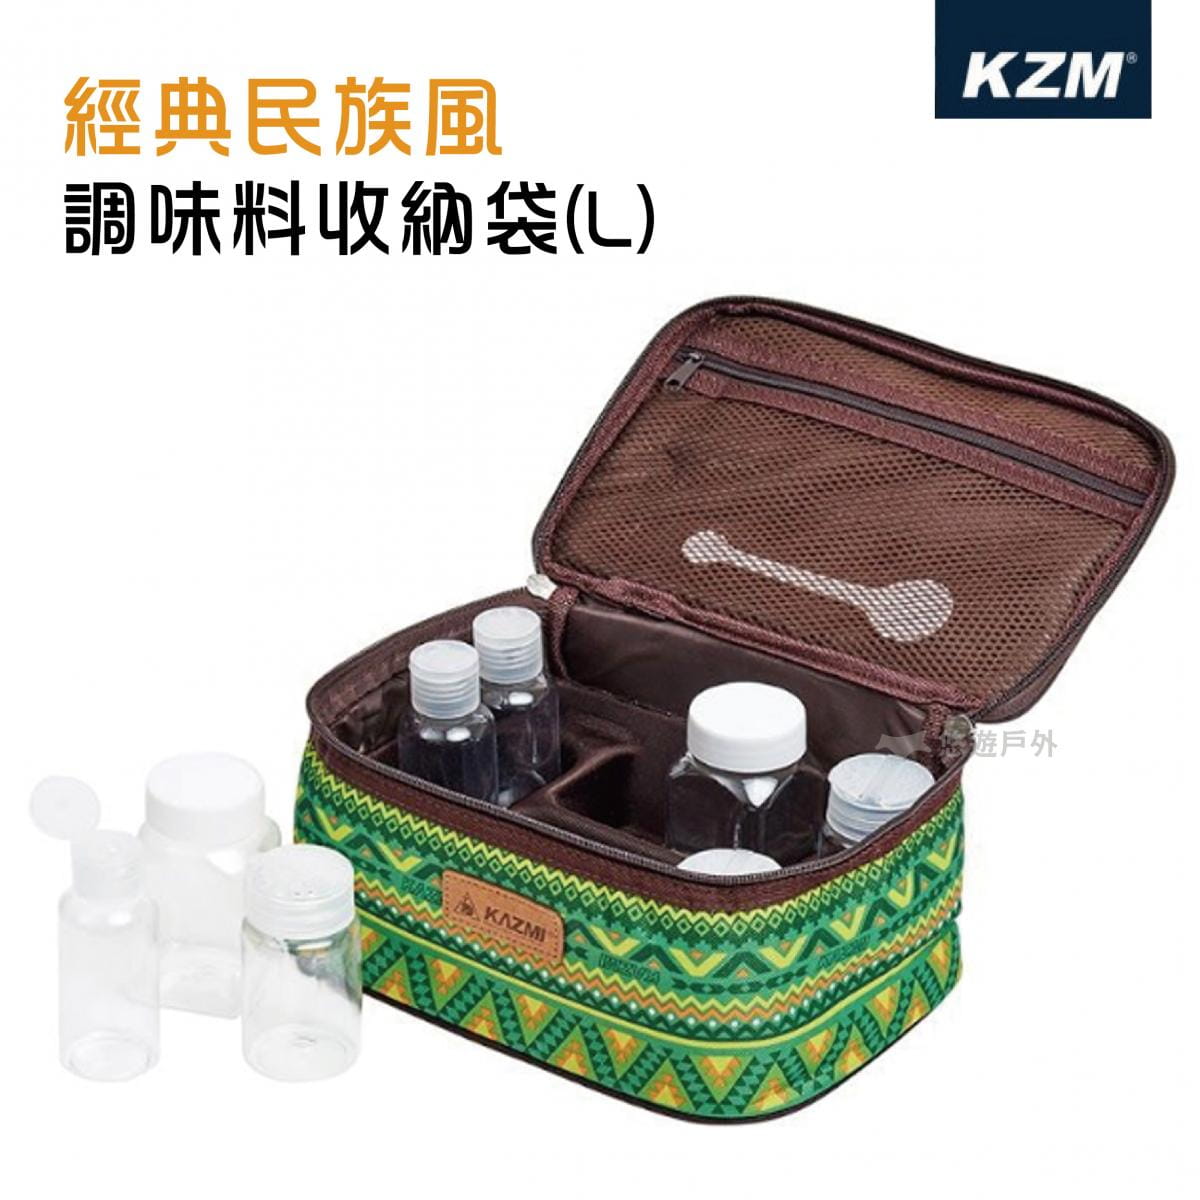 【悠遊戶外】KAZMI KZM 經典民族風調味料收納袋(L)-綠色 0